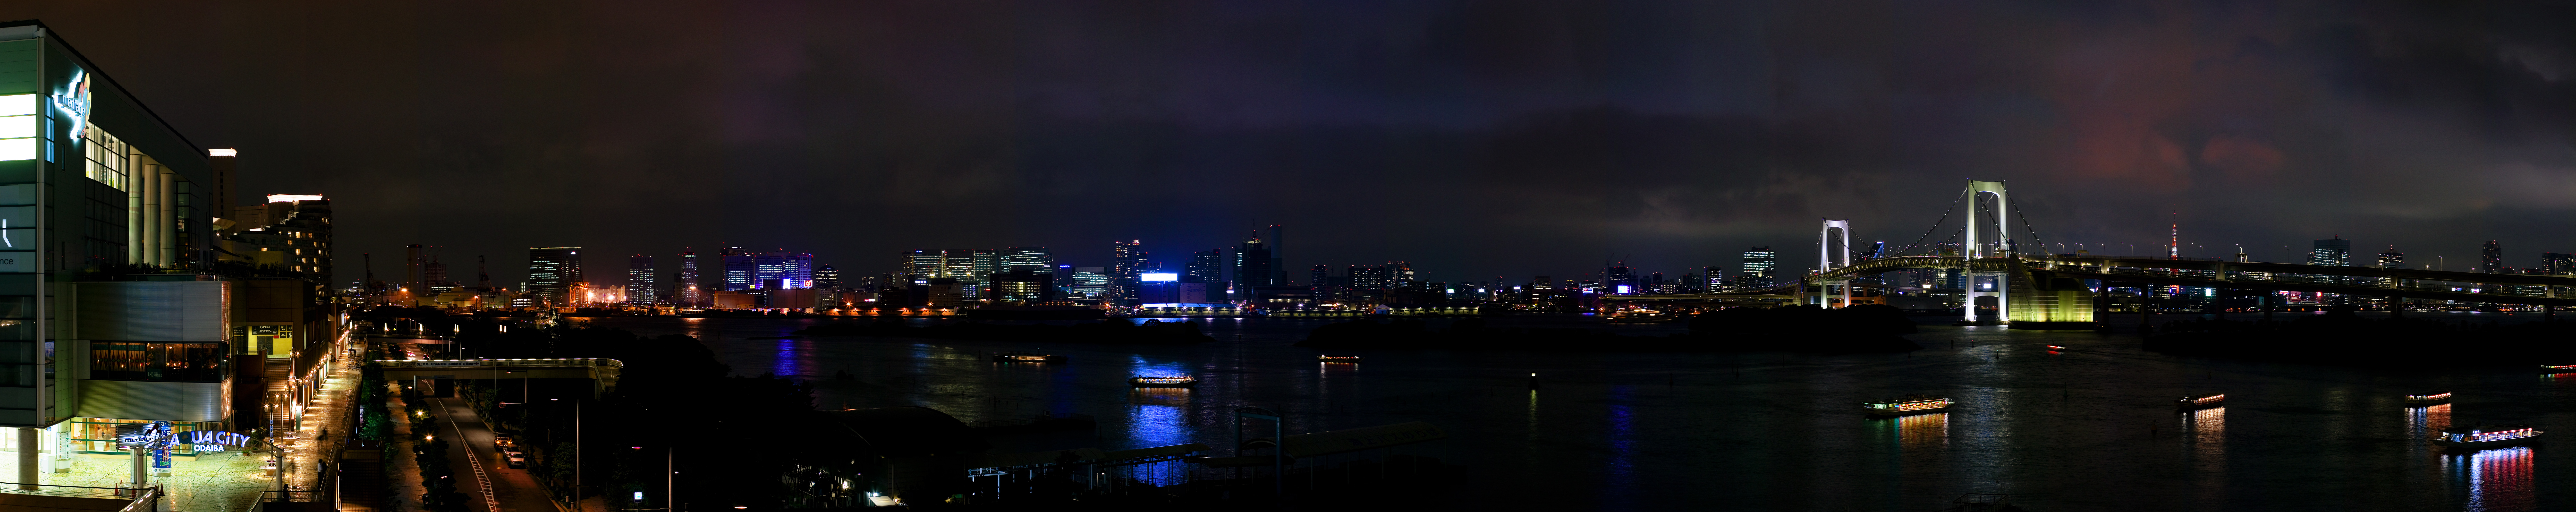 foto,tela,gratis,paisaje,fotografa,idea,Vista de noche de Tokio de Odaiba, Rainbow Bridge, Baha de Tokio, Barco de recreo, La playa